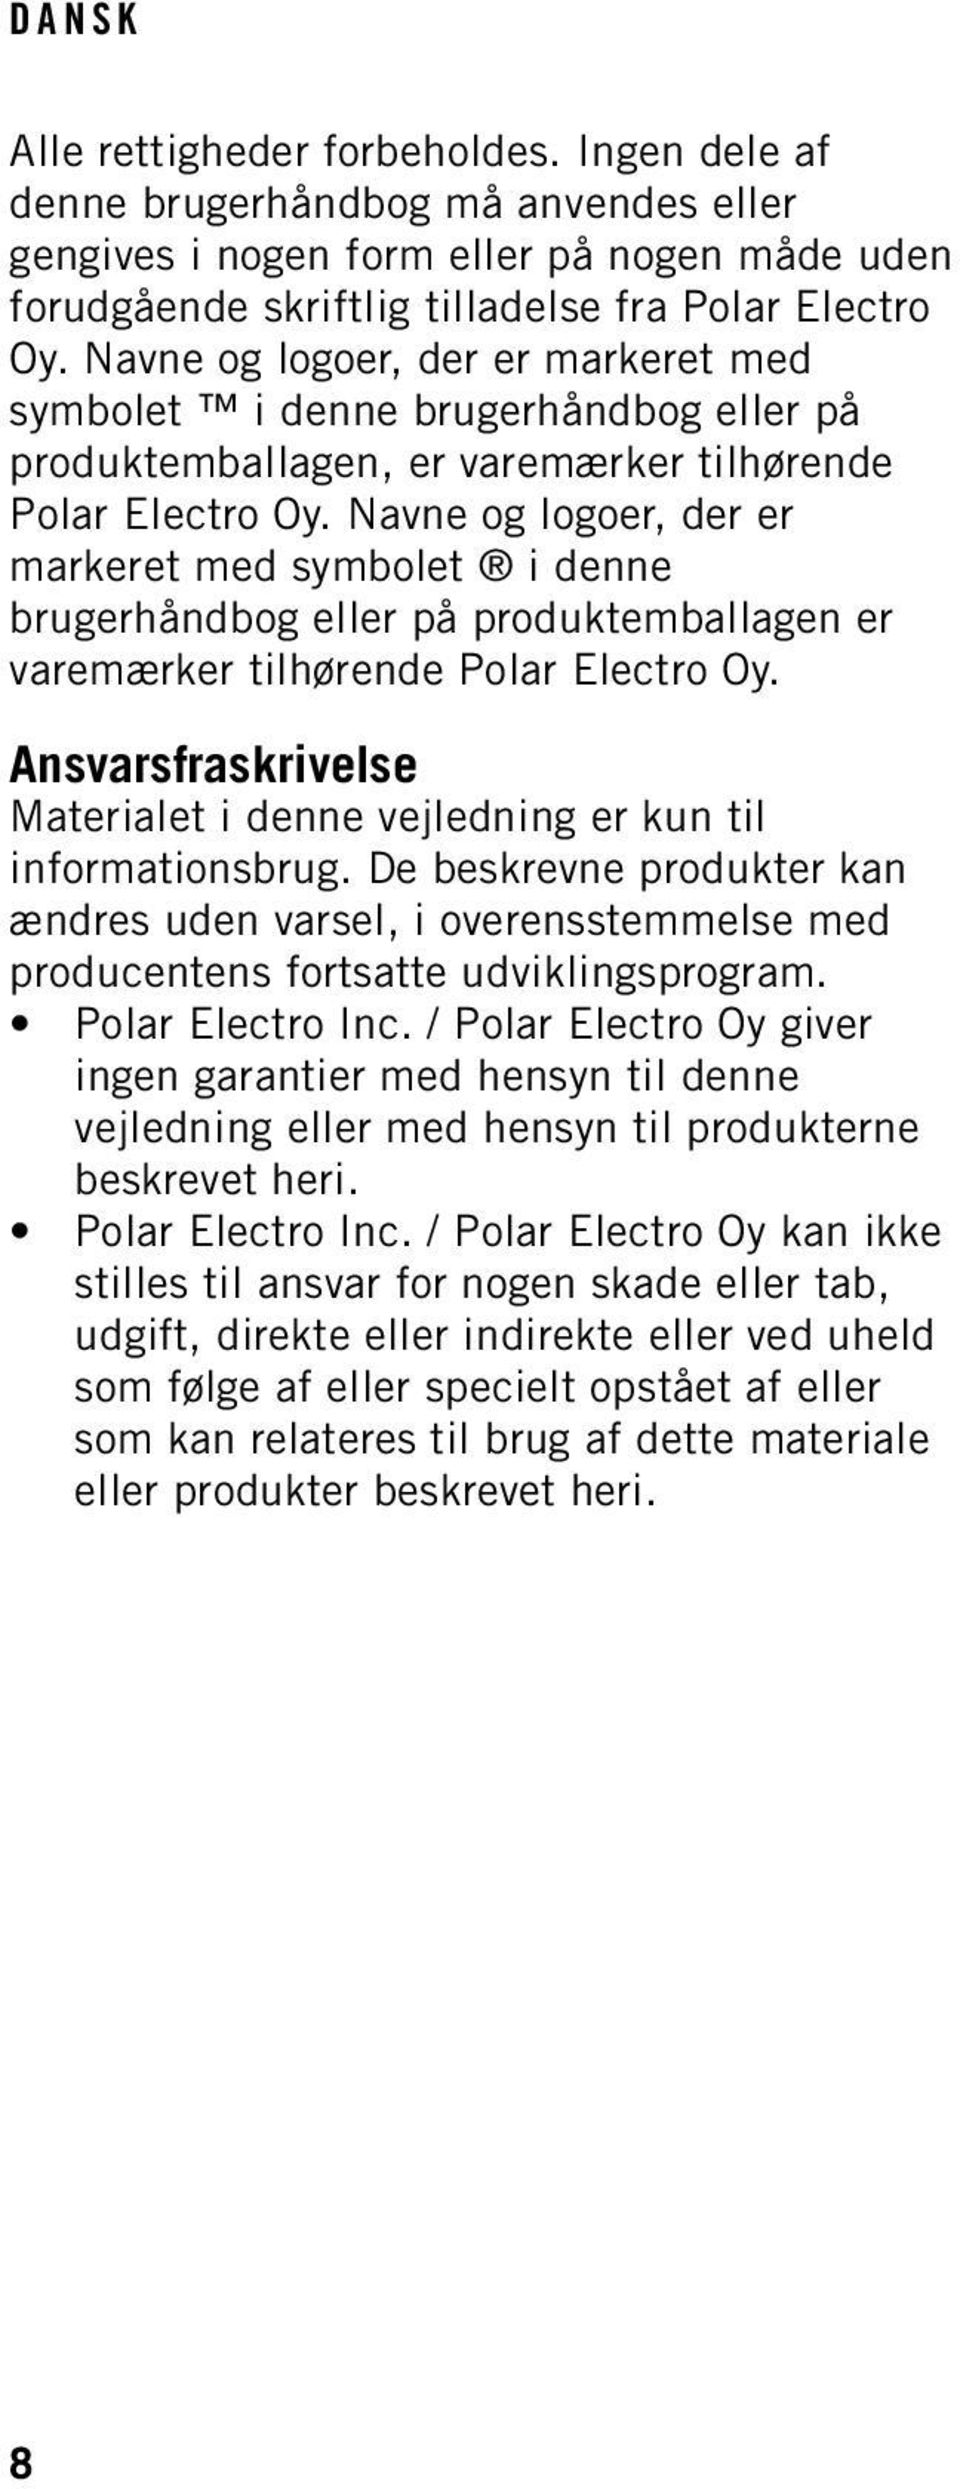 Navne og logoer, der er markeret med symbolet i denne brugerhåndbog eller på produktemballagen er varemærker tilhørende Polar Electro Oy.